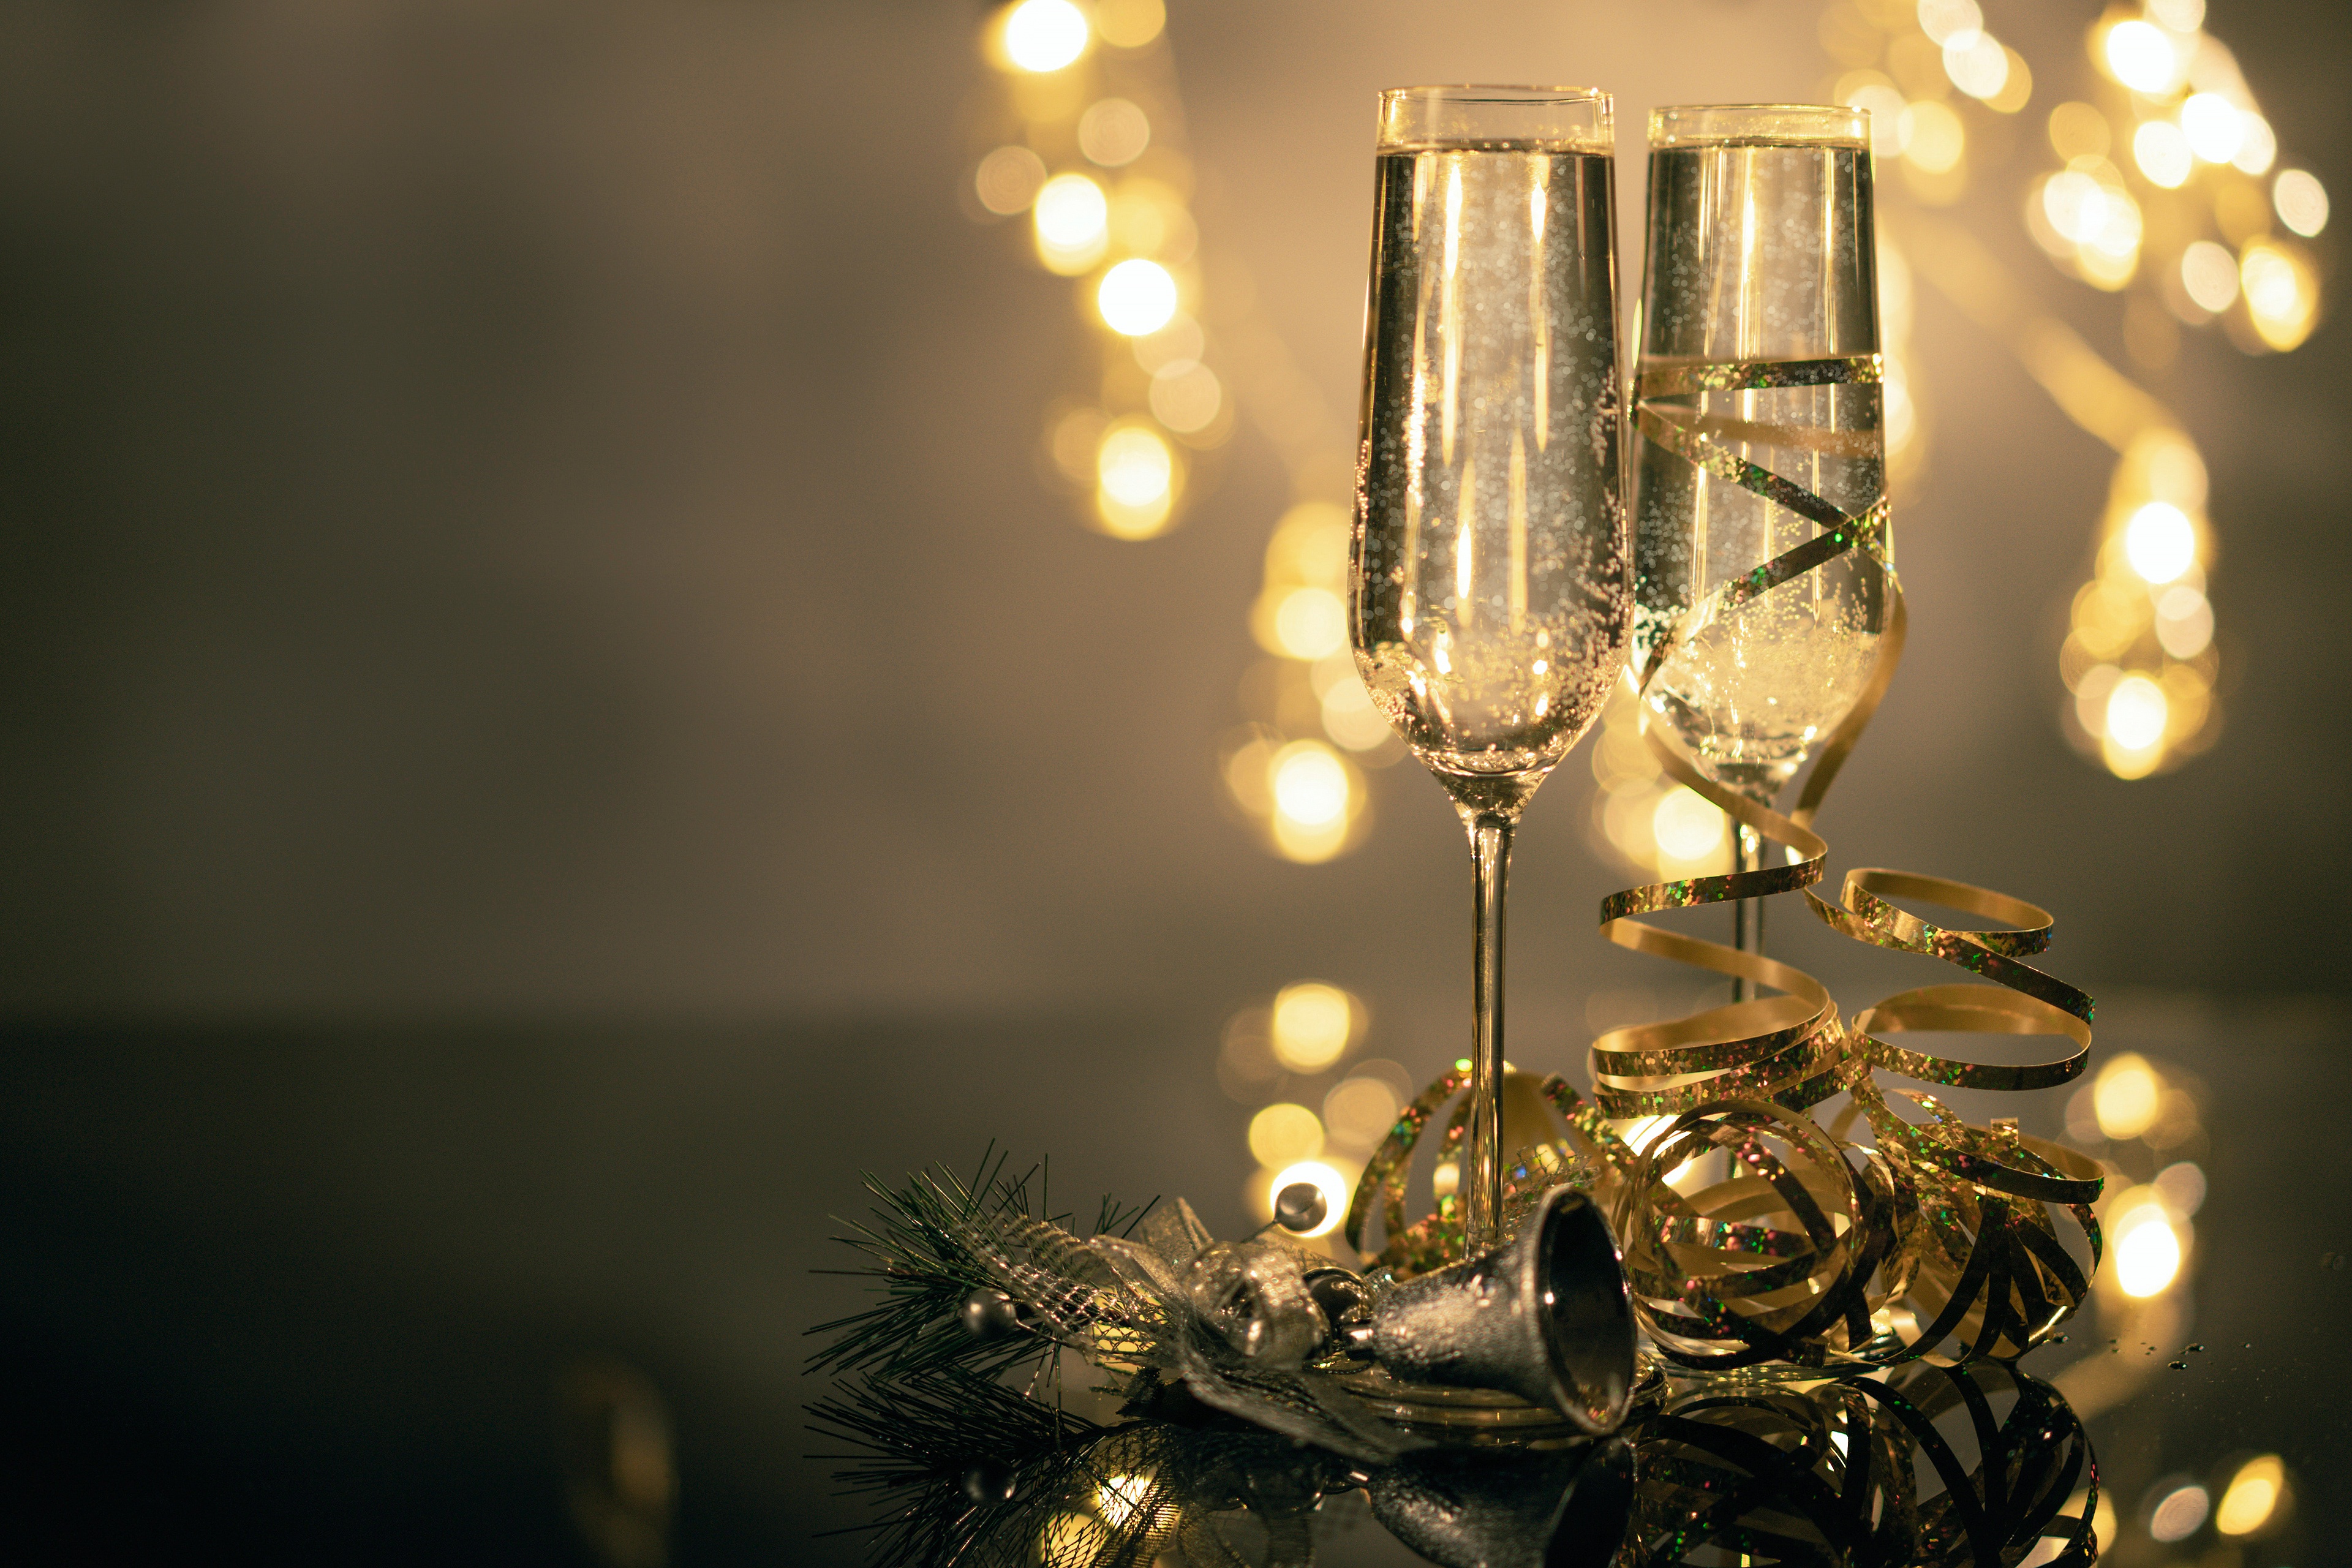 Скачать обои бесплатно Еда, Вино, Рождество, Стекло, Шампанское картинка на рабочий стол ПК